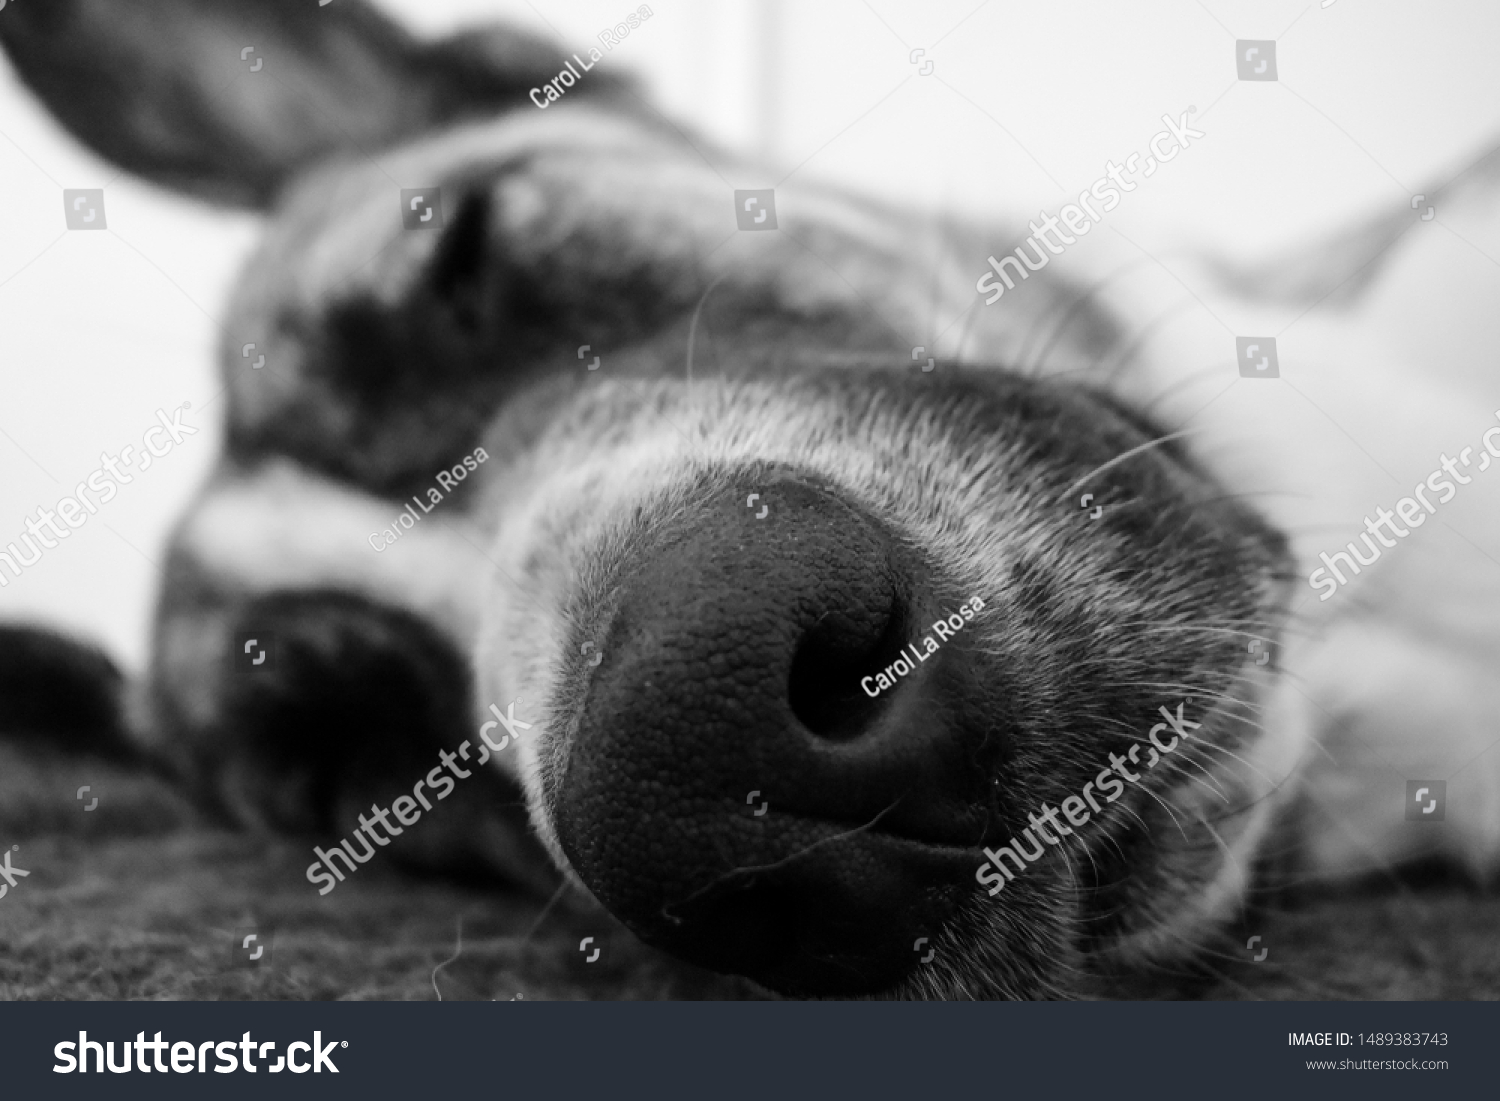 Beautiful Spanish Mastiff Dog Background Stock Photo Edit Now 1489383743